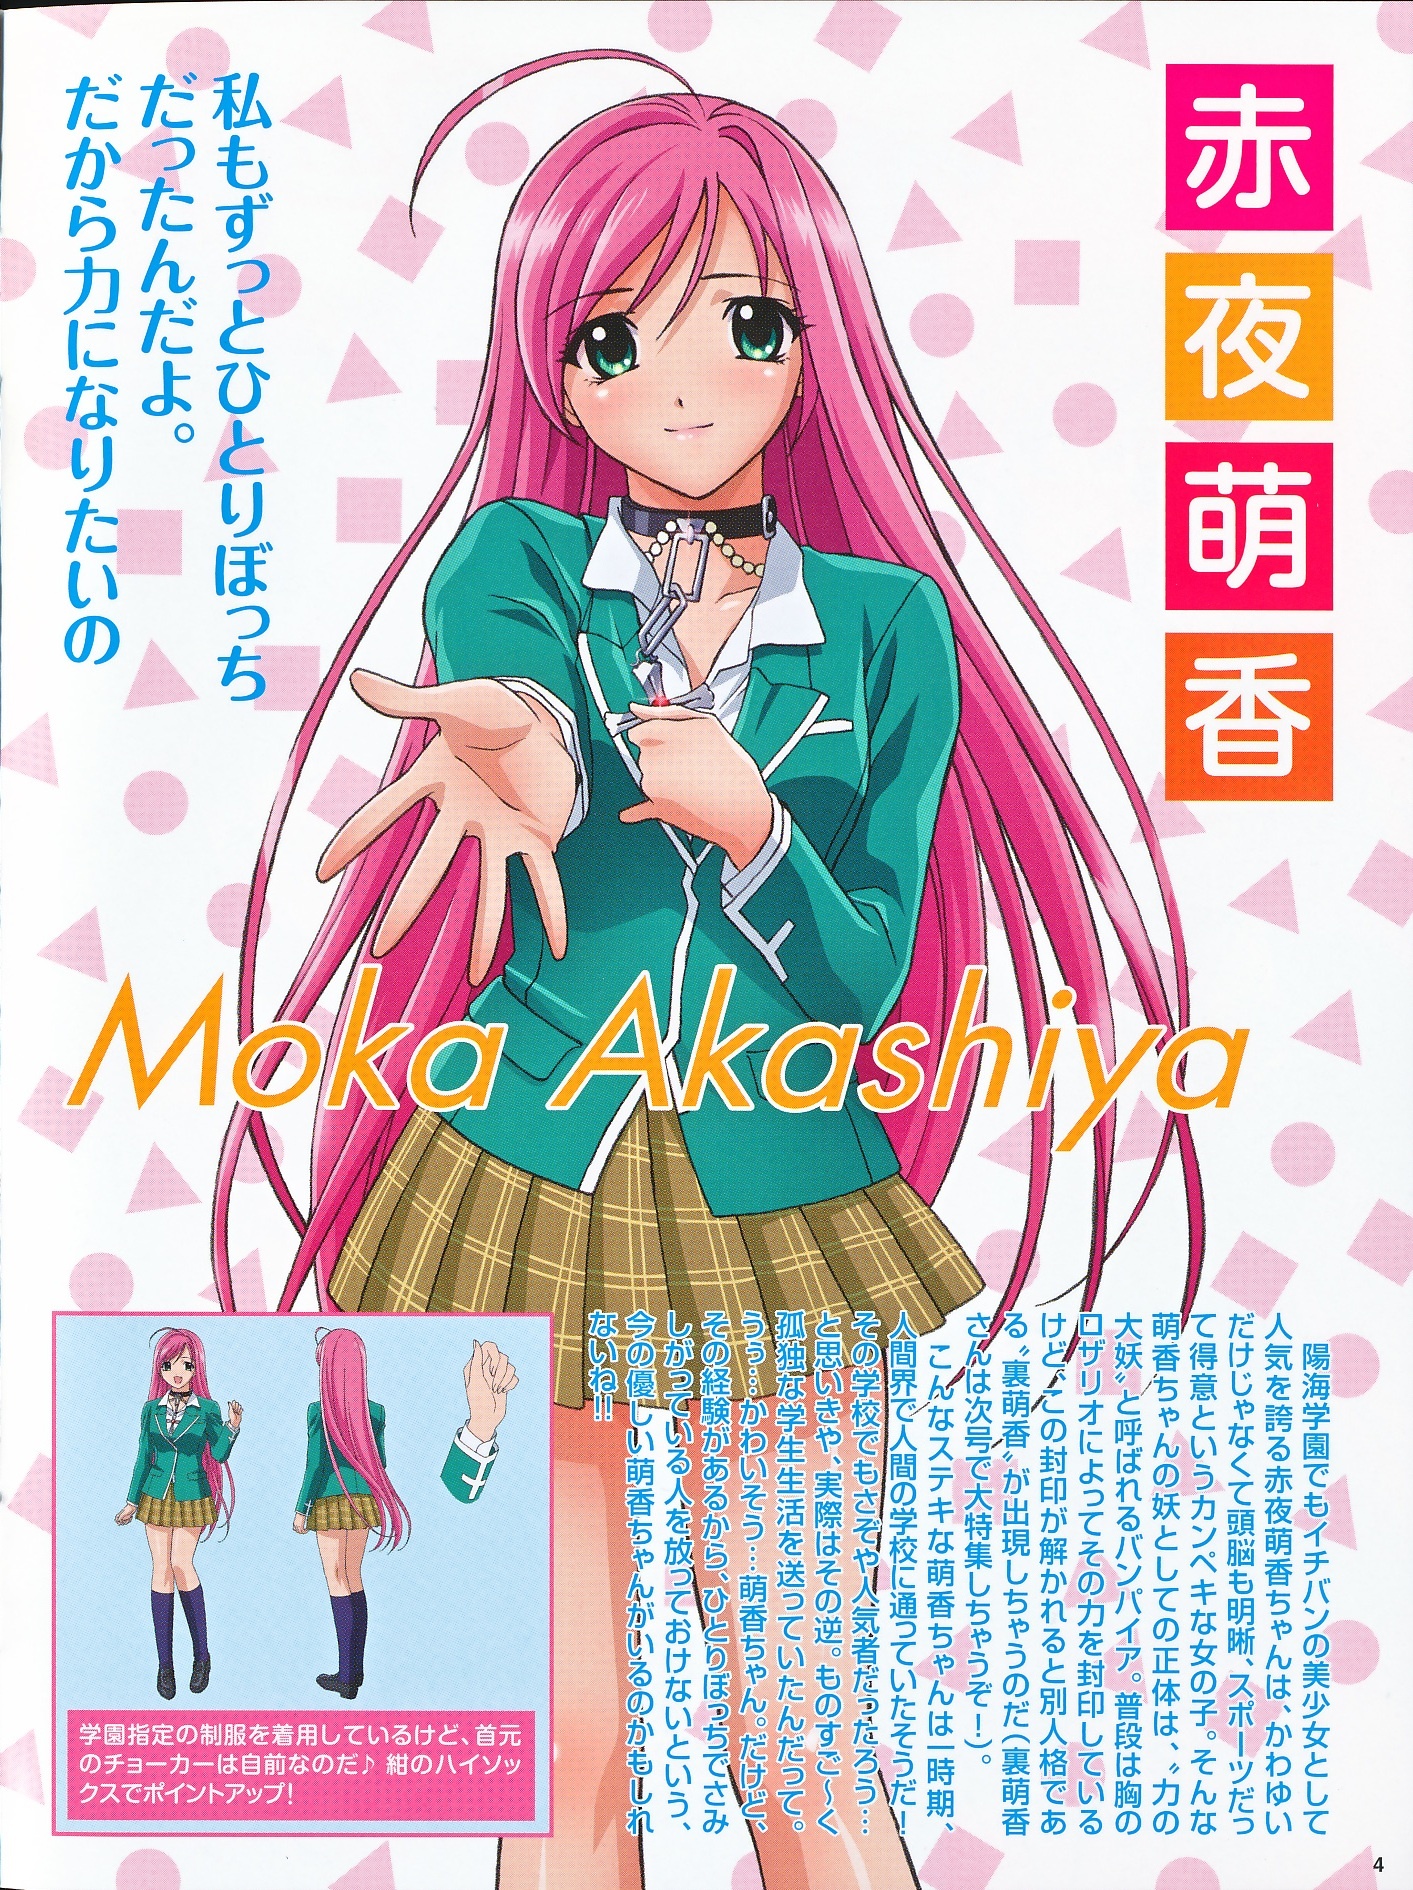 розовые волосы, девушка, акасия мока, rosario + vampire, Akashiya Moka обои (фото, картинки)